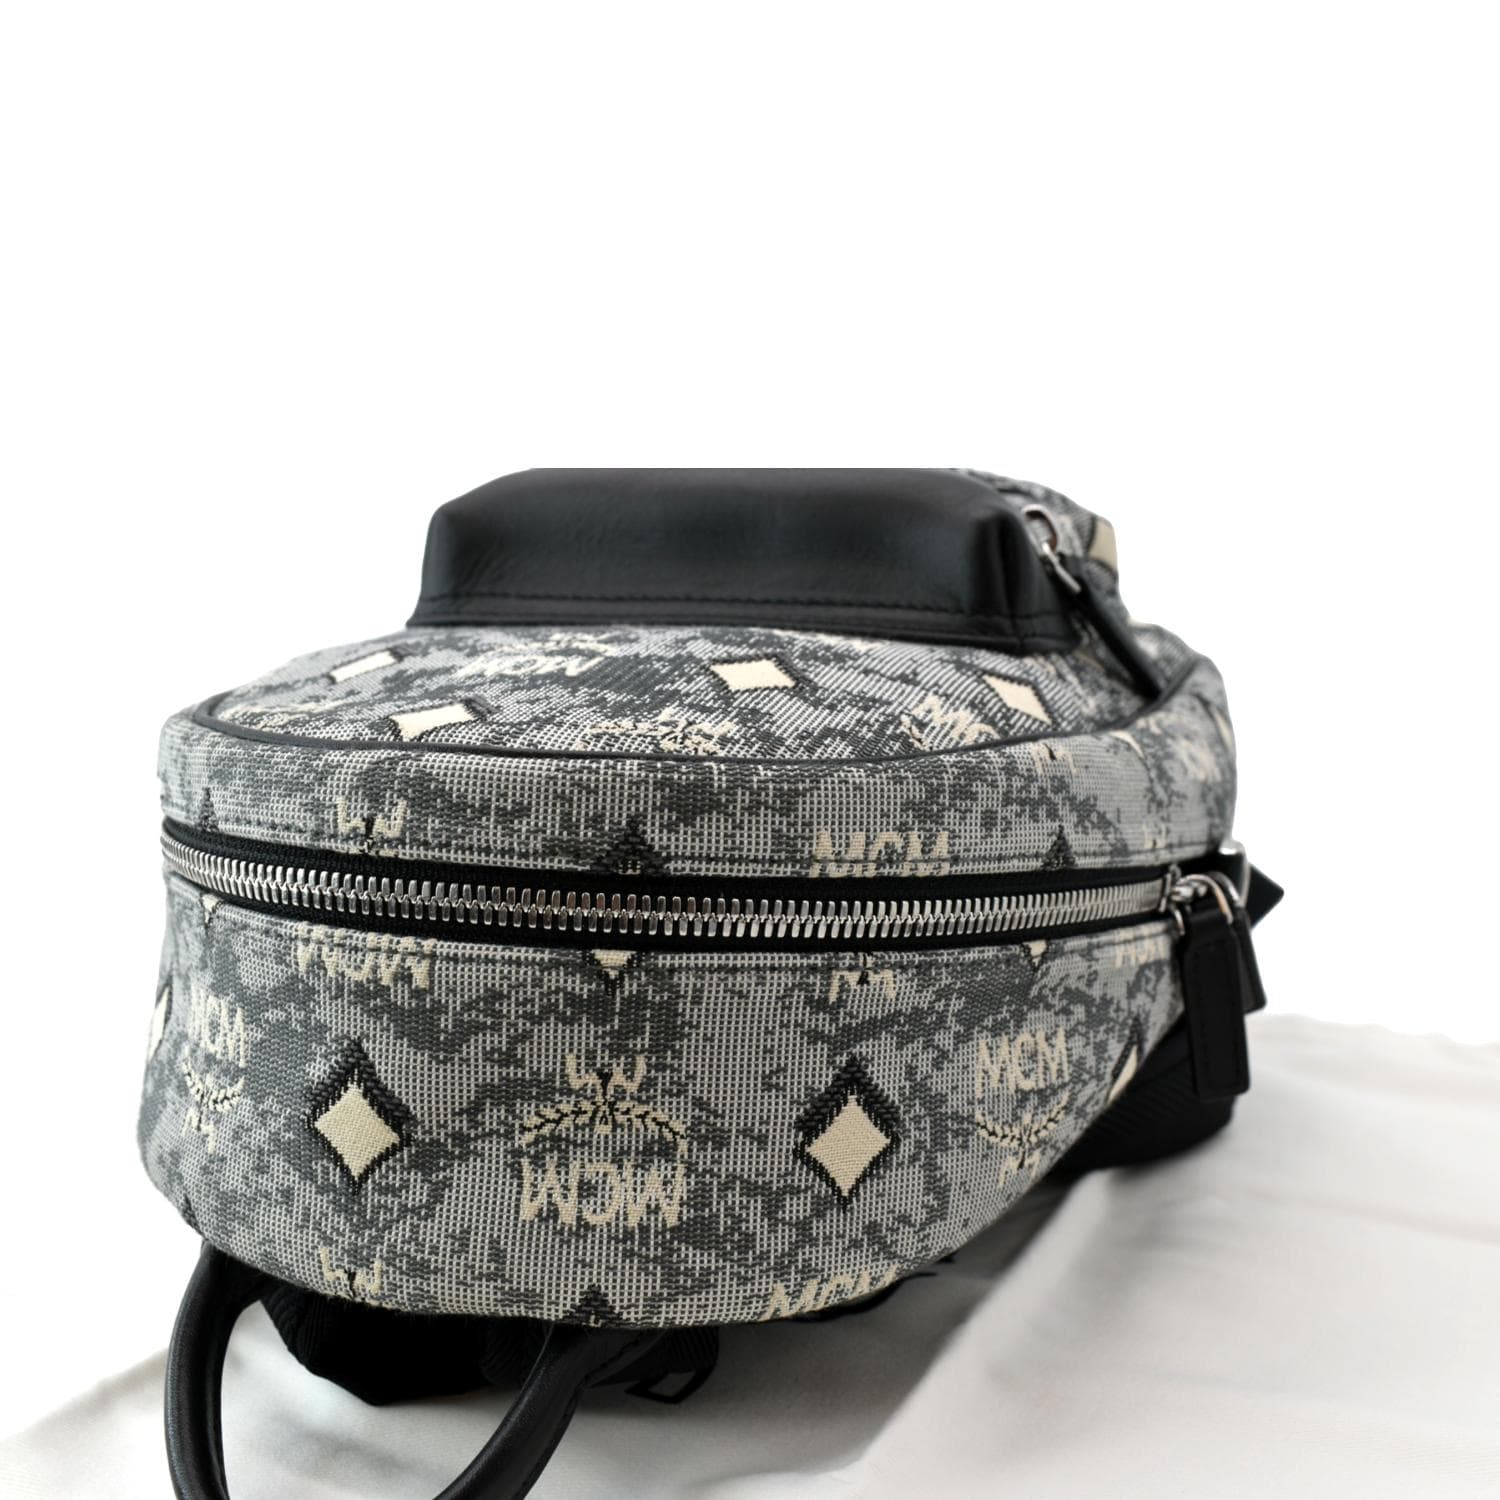 Medium Retro Dual Stark Backpack in Visetos Black